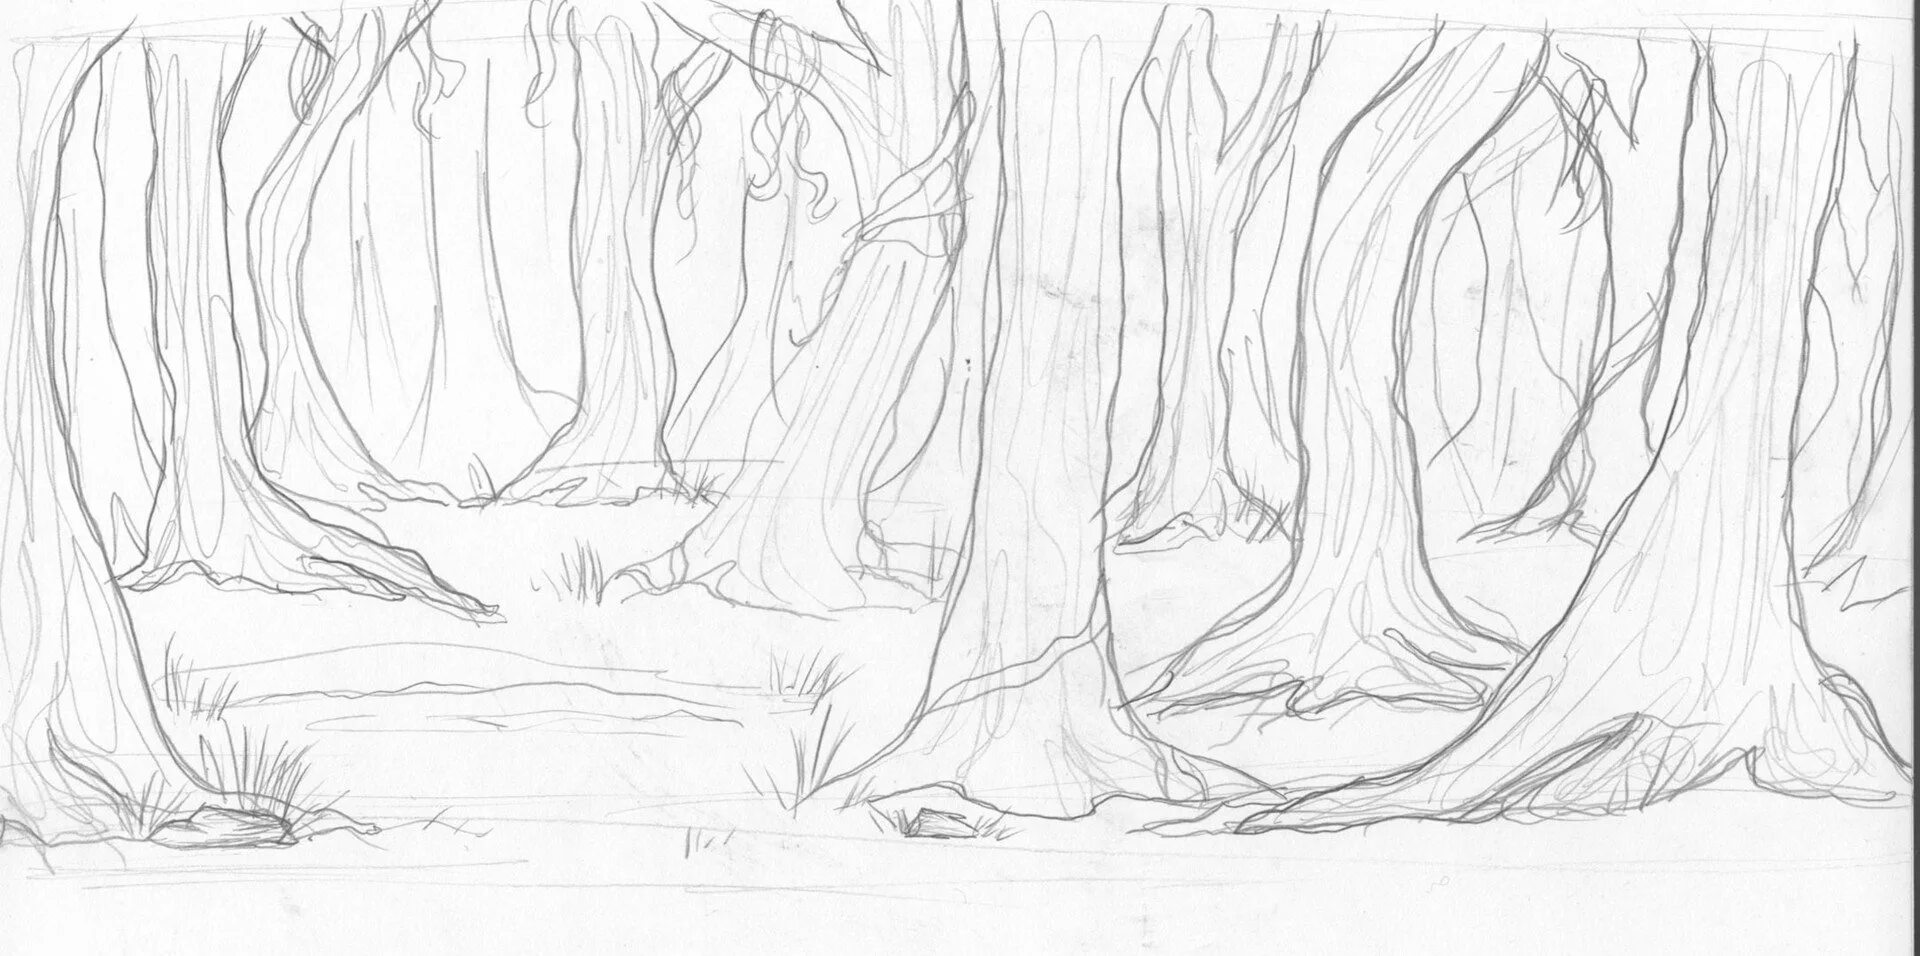 Рисунок лес карандашом для срисовки. Лес карандашом для начинающих. Нарисовать лес карандашом. Сказочный лес карандашом. Деревья вдали рисунок